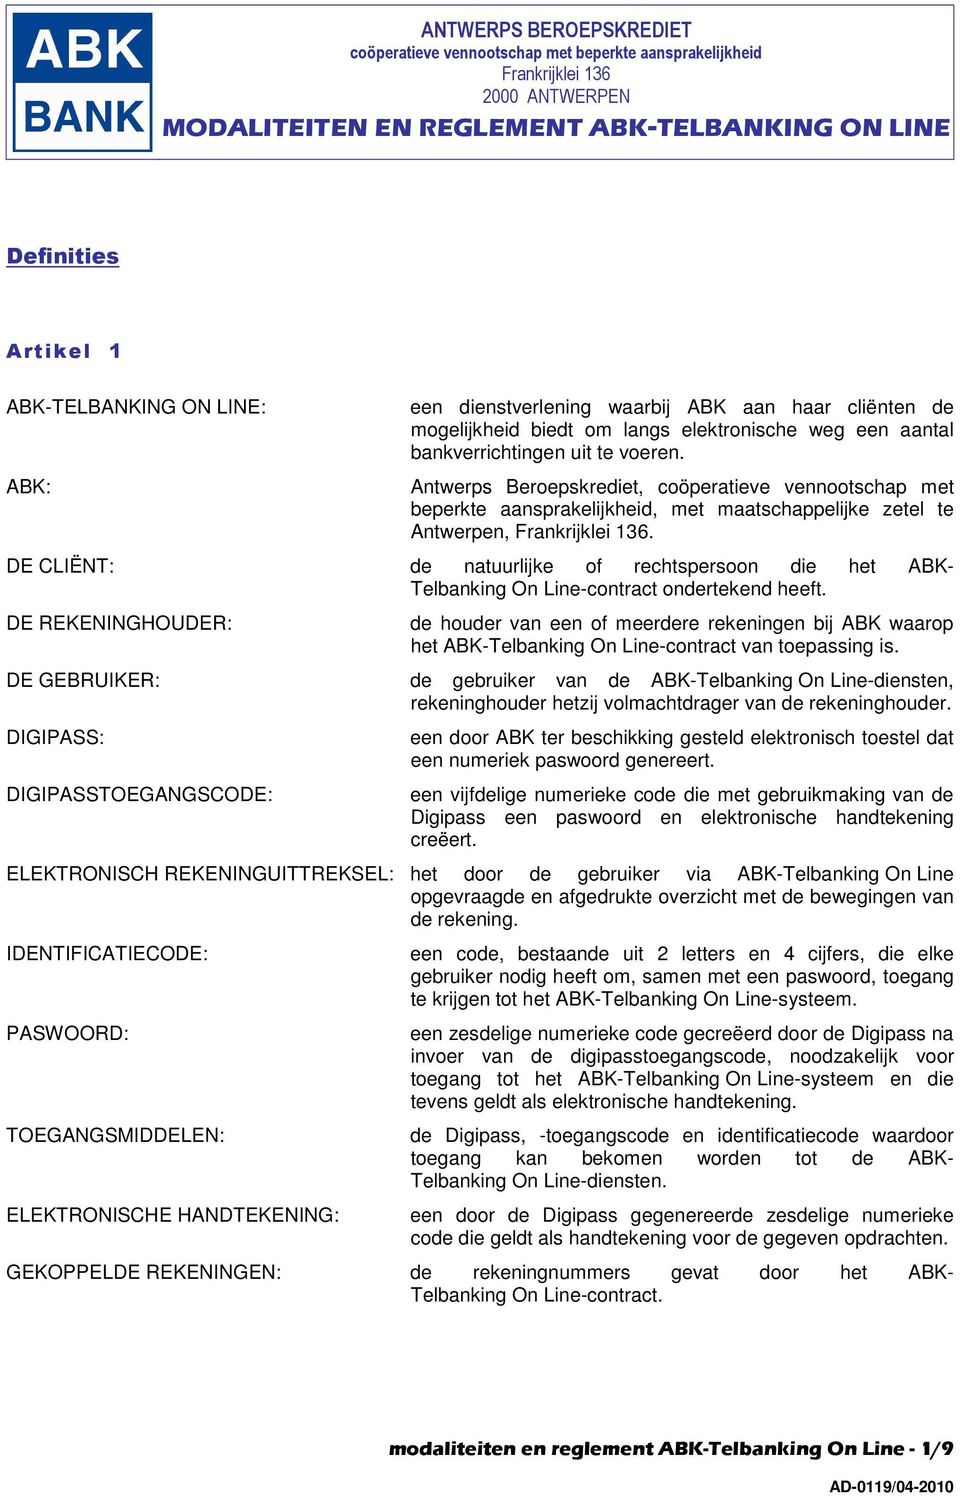 Antwerps Beroepskrediet, coöperatieve vennootschap met beperkte aansprakelijkheid, met maatschappelijke zetel te Antwerpen, Frankrijklei 136.